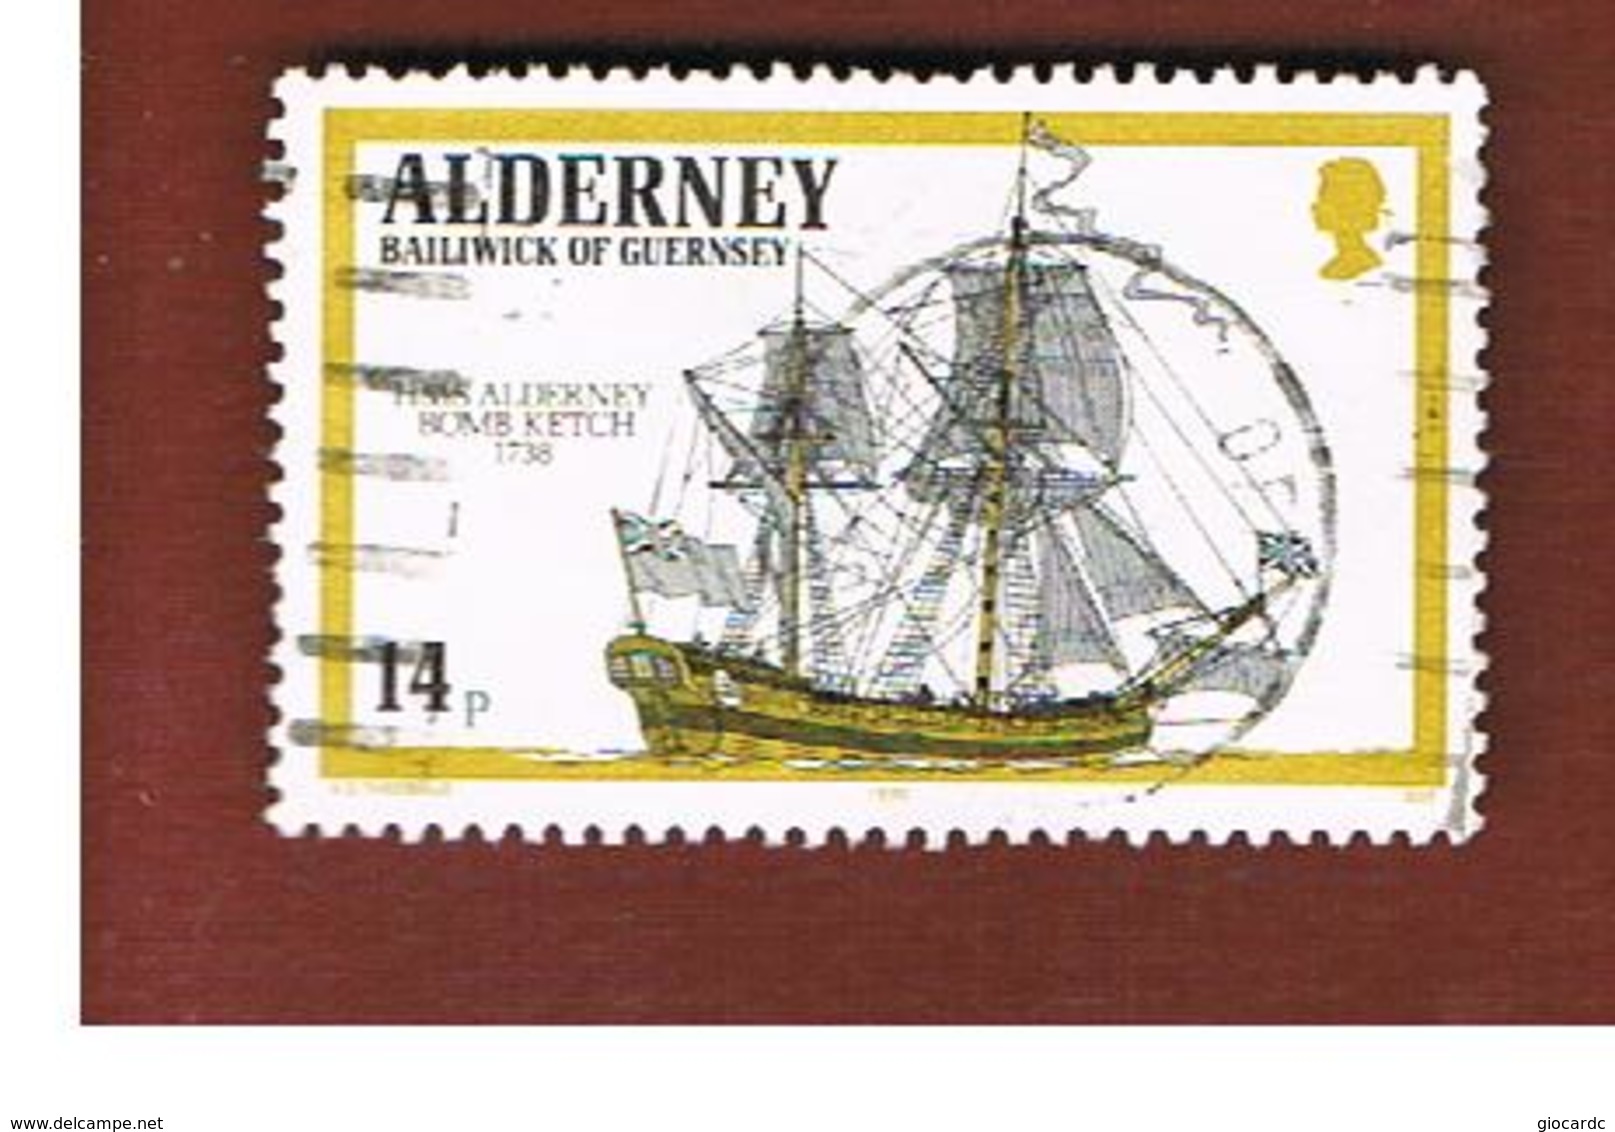 ALDERNEY  -  SG A42 - 1990 ROYAL NAVY SHIPS -   USED - Alderney